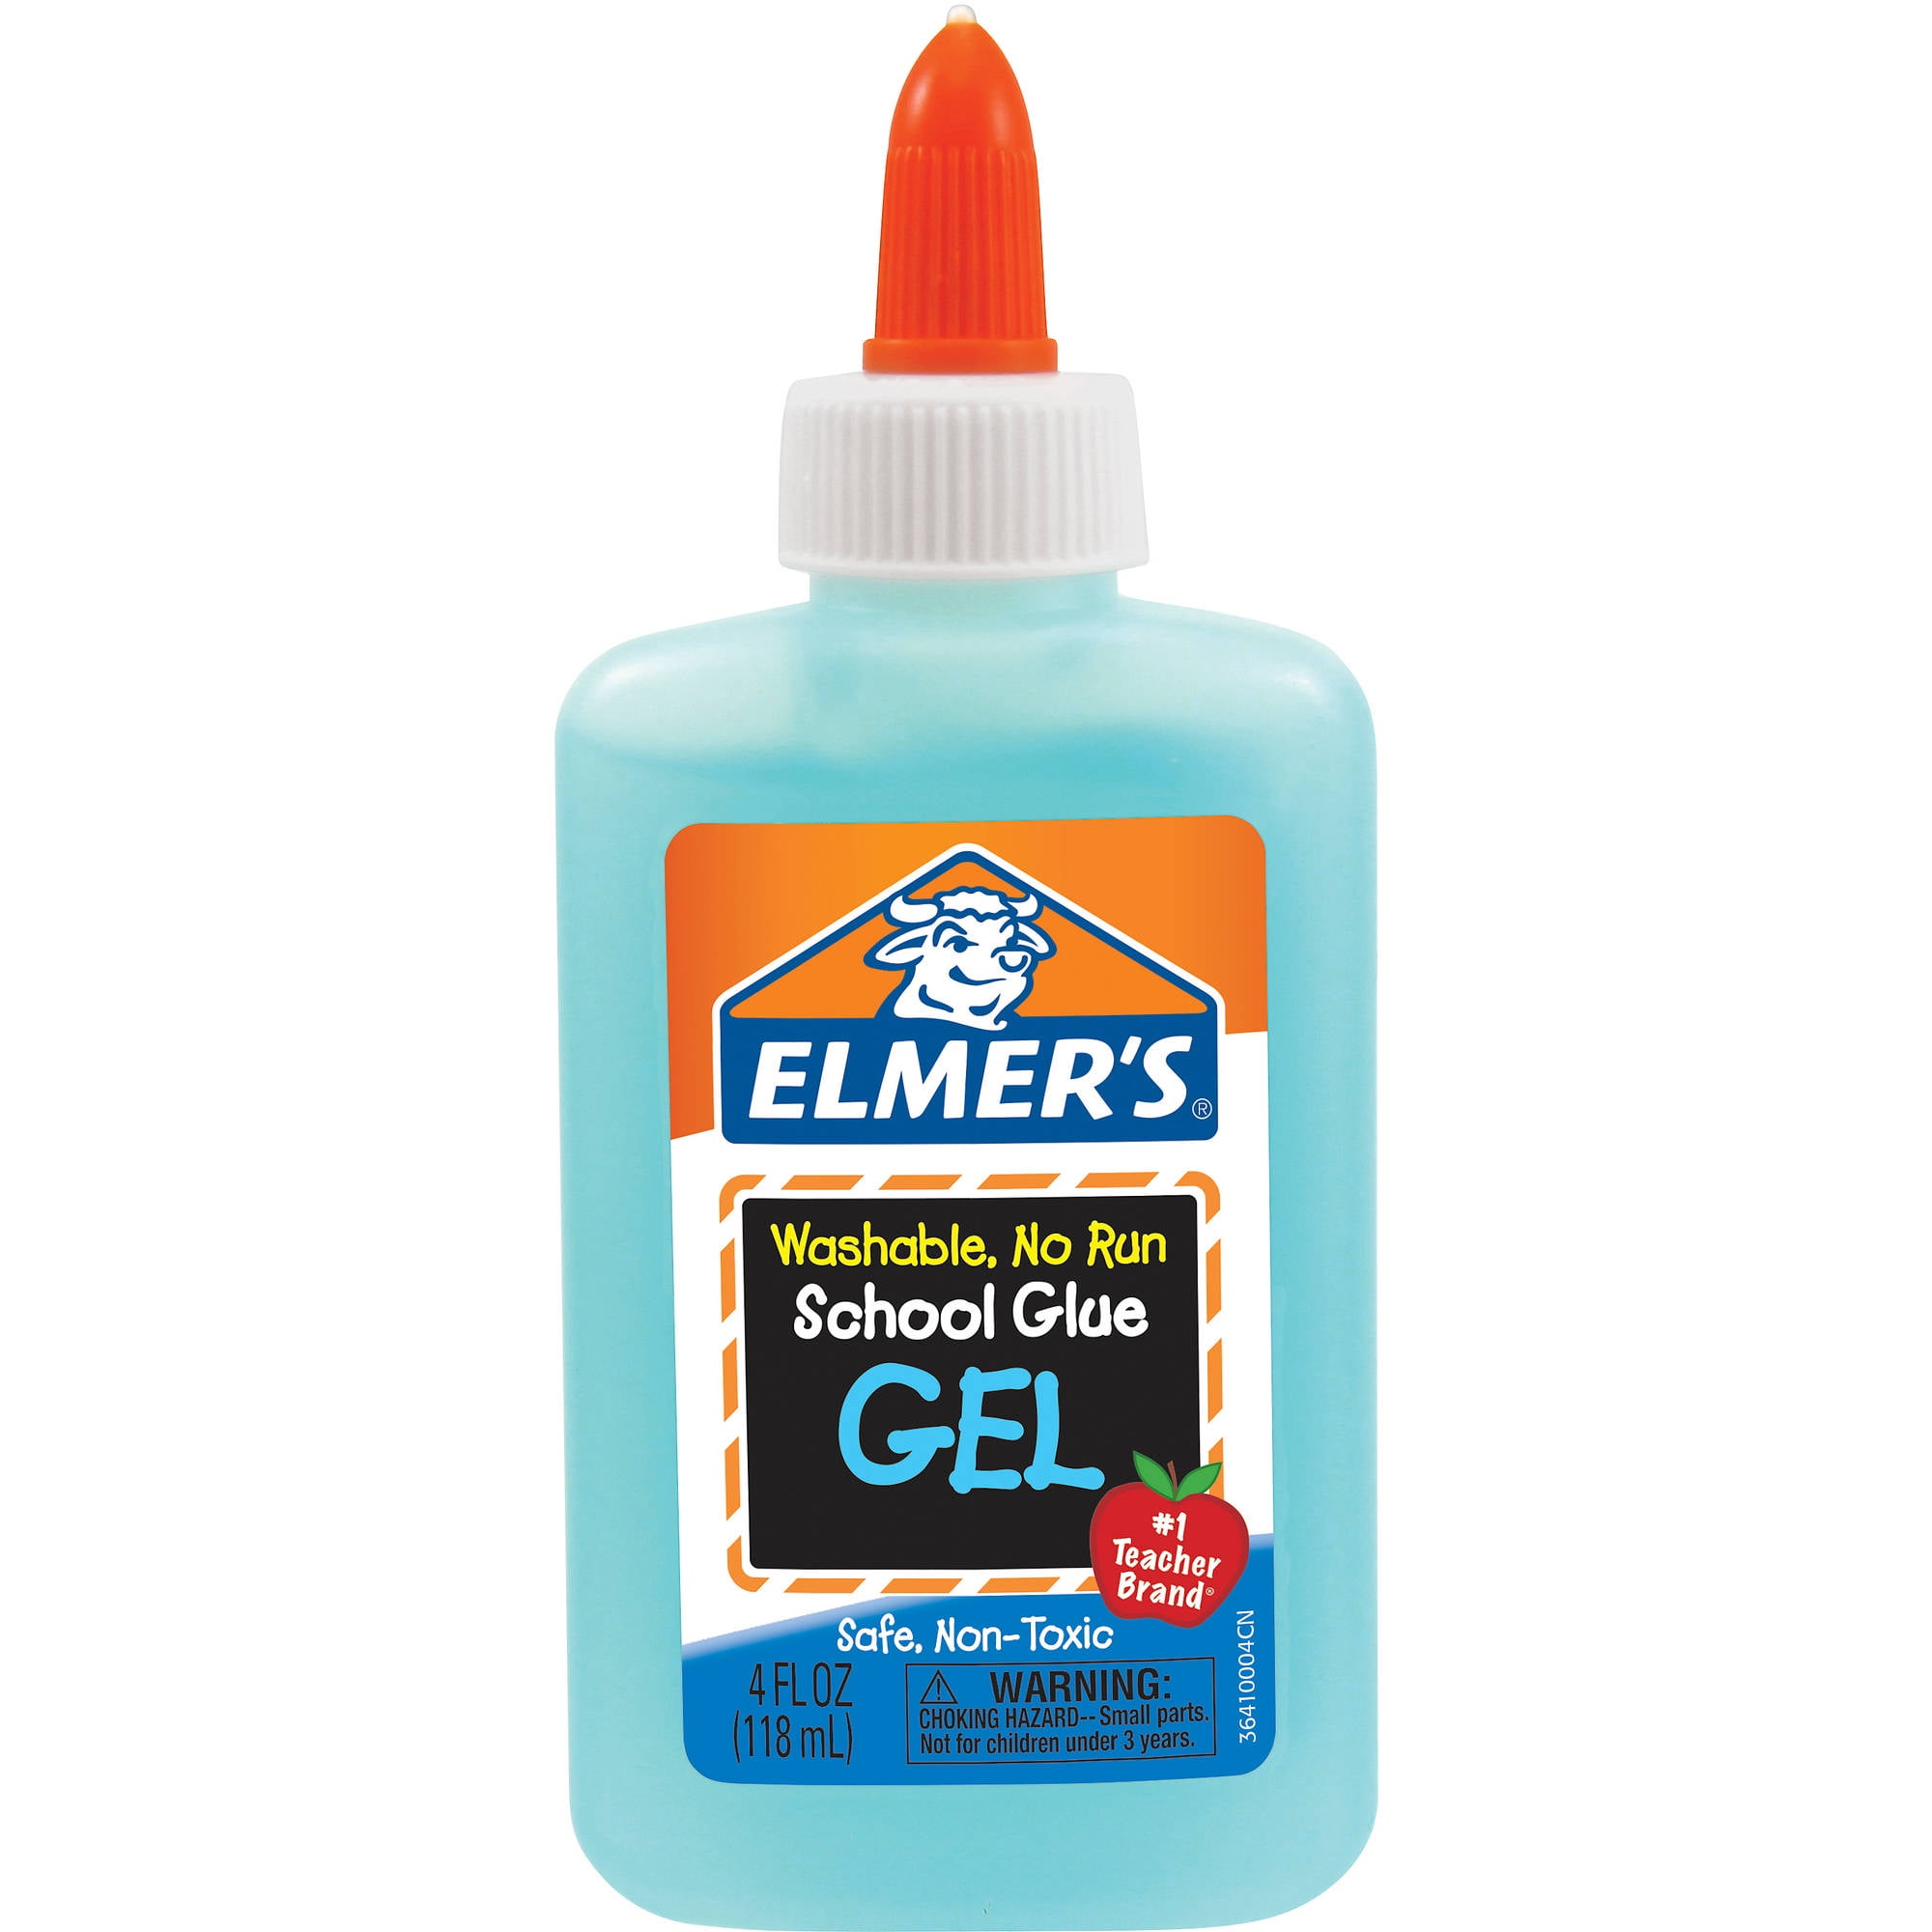 Elmer's School Glue Gel 4 oz.